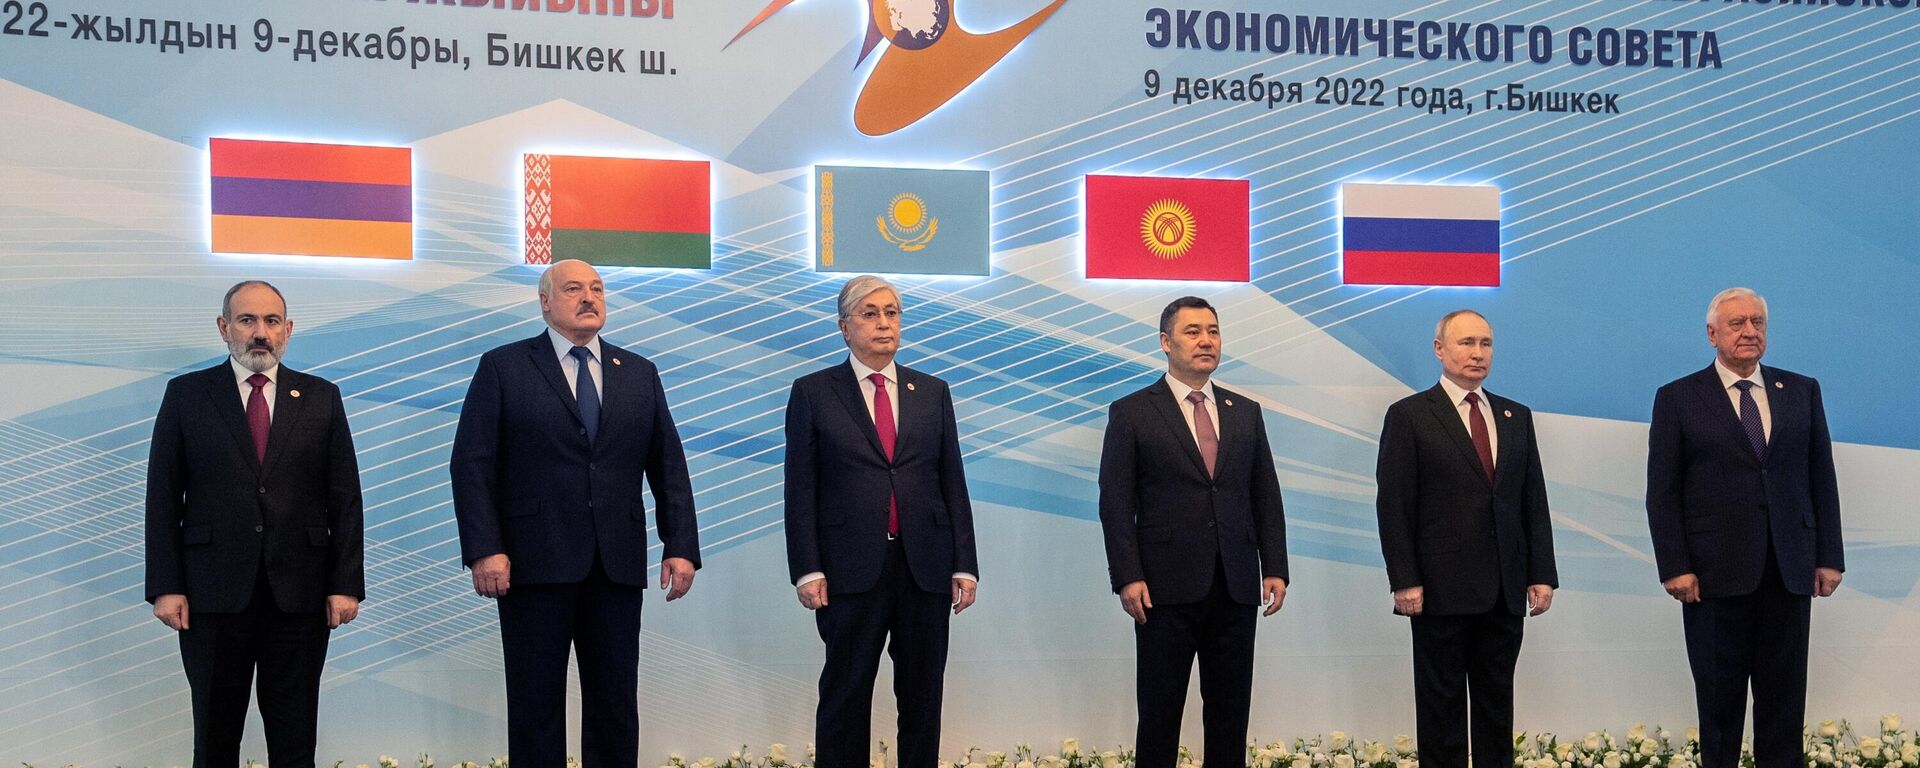 Президент РФ В. Путин принял участие в работе саммита ЕАЭС в Бишкеке - Sputnik Молдова, 1920, 09.12.2022